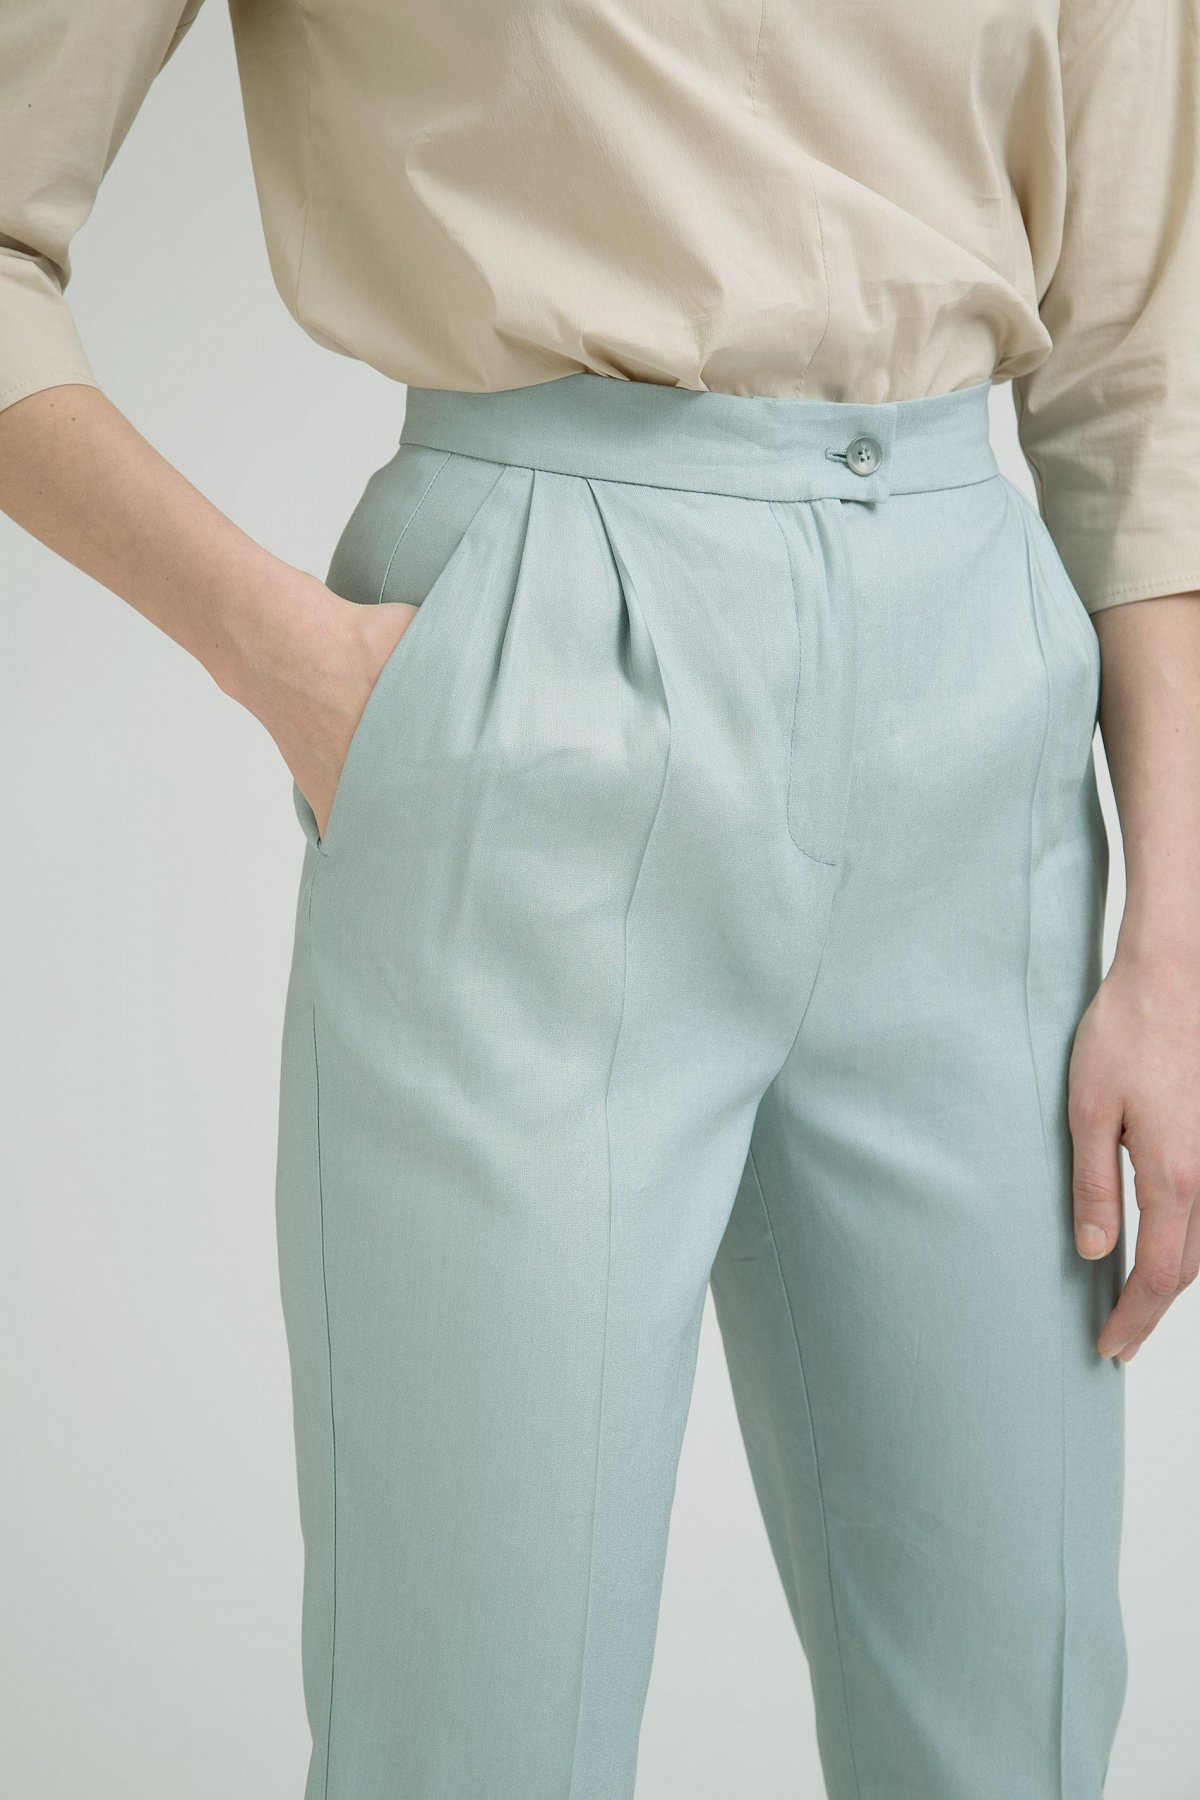 Женские брюки с защипами: кому подходят и с чем носить